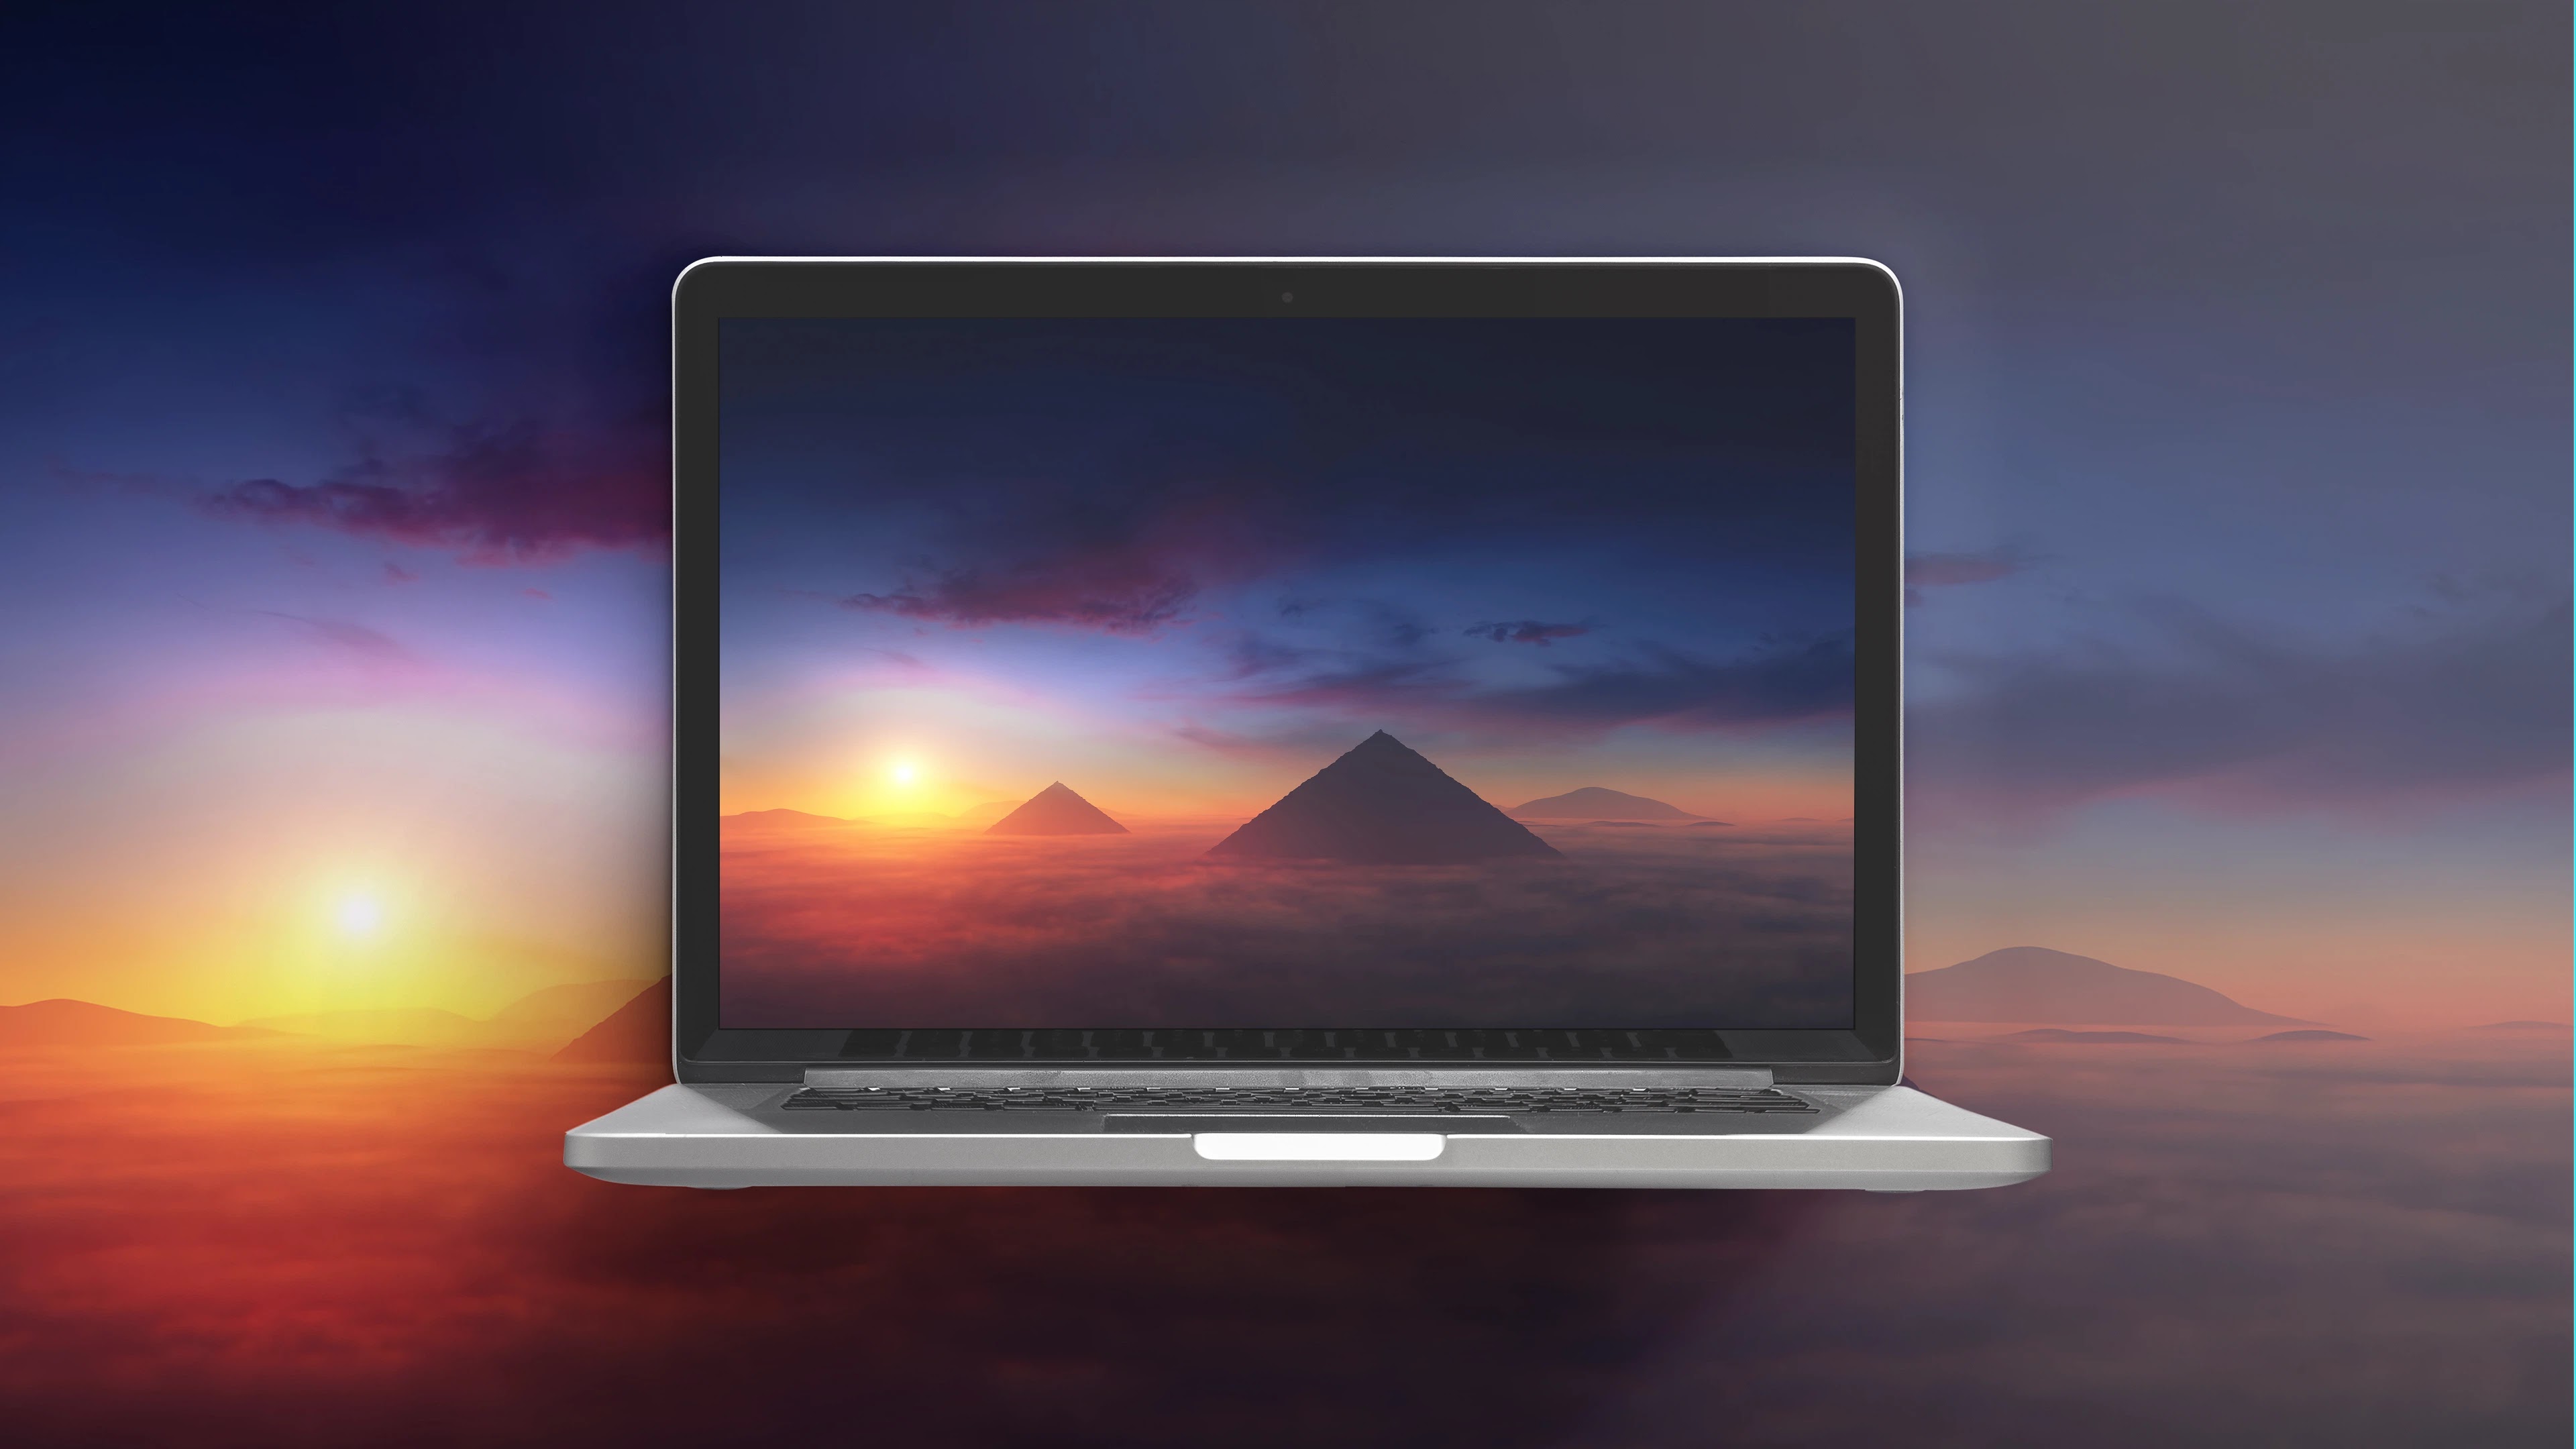 Cảm nhận tinh túy của hoàng hôn đồi cát ngay trên màn hình laptop của bạn với bức ảnh nền laptop 4k hoàng hôn đẹp tuyệt vời này. Hình ảnh rực rỡ, sống động sẽ đem đến cho bạn cảm giác như đang đứng trực tiếp trước khung cảnh tuyệt đẹp đó. 